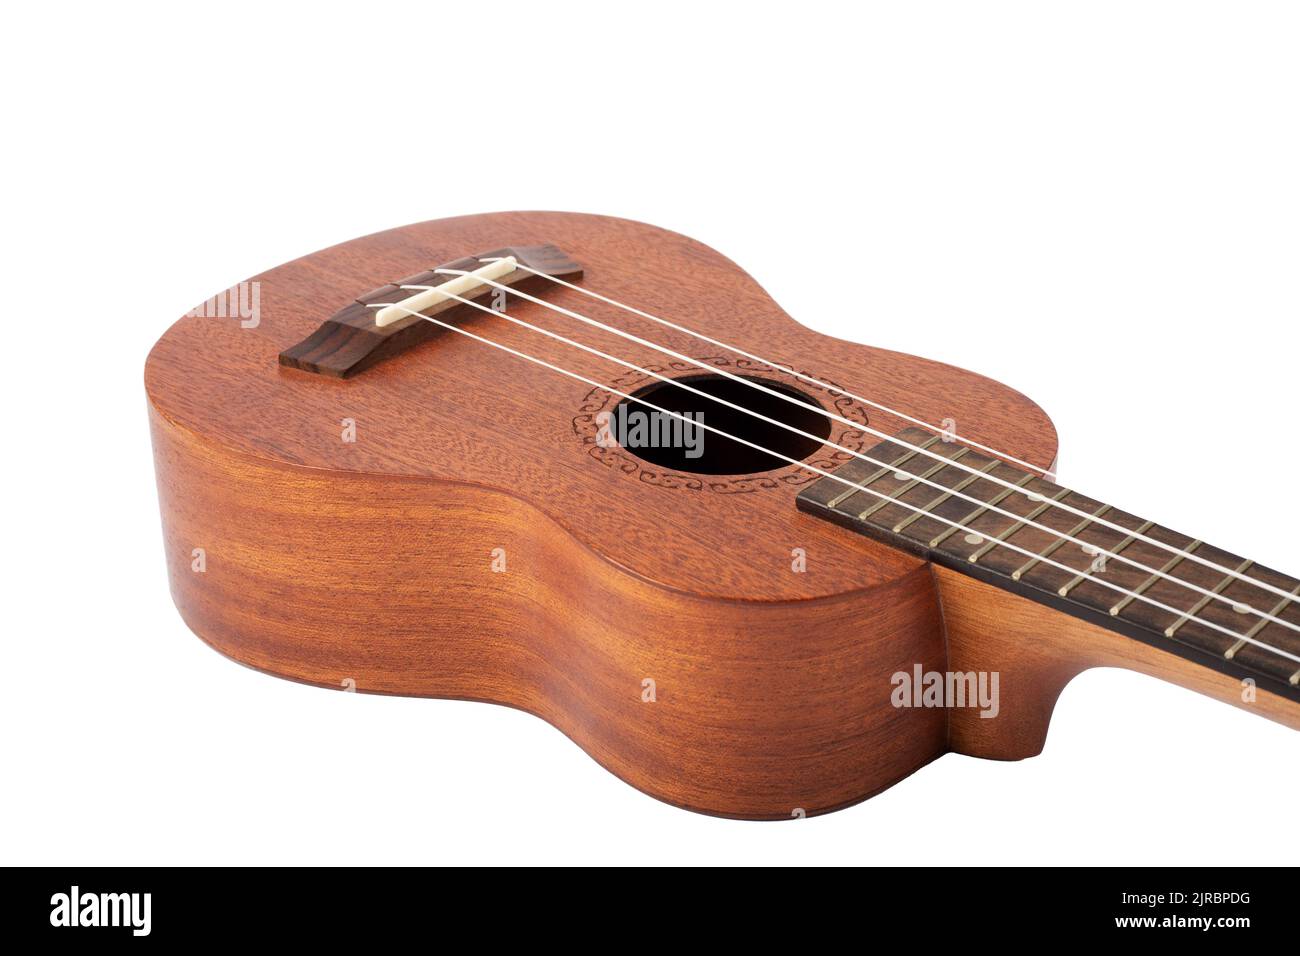 Wooden ukulele guitar isolated over white background Stock Photo